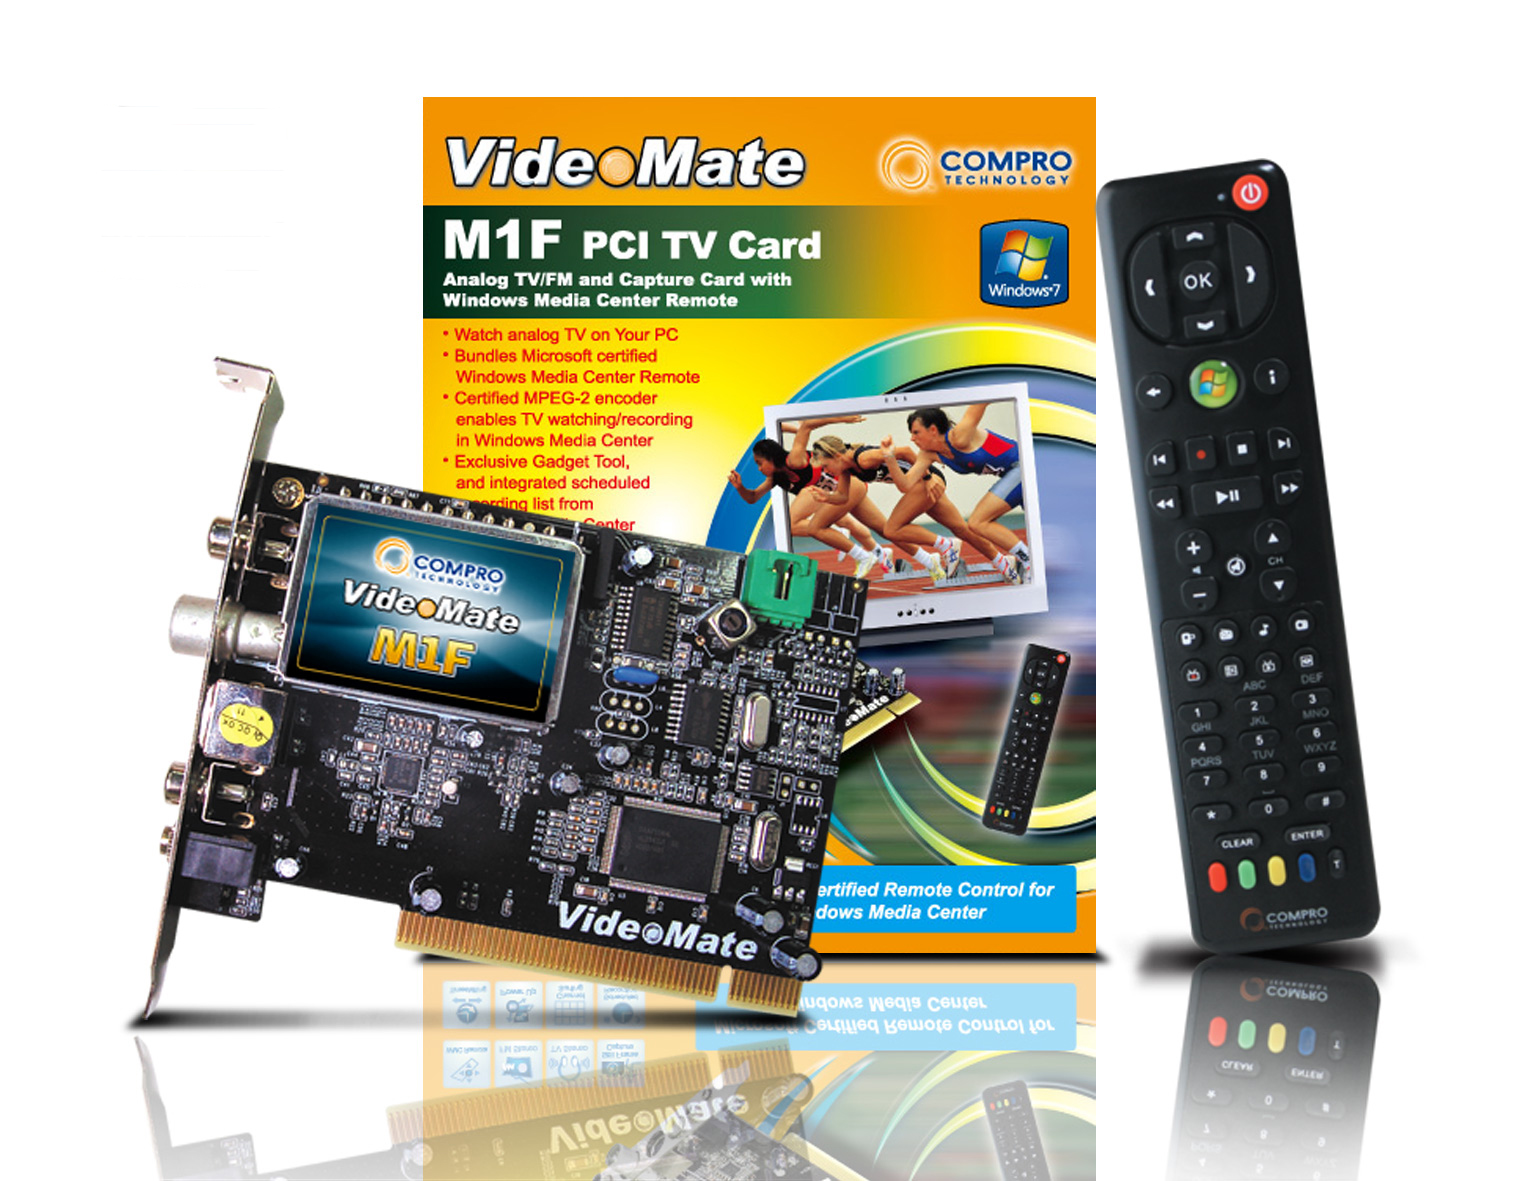 Compro: telewizja w komputerze z VideoMate M1F